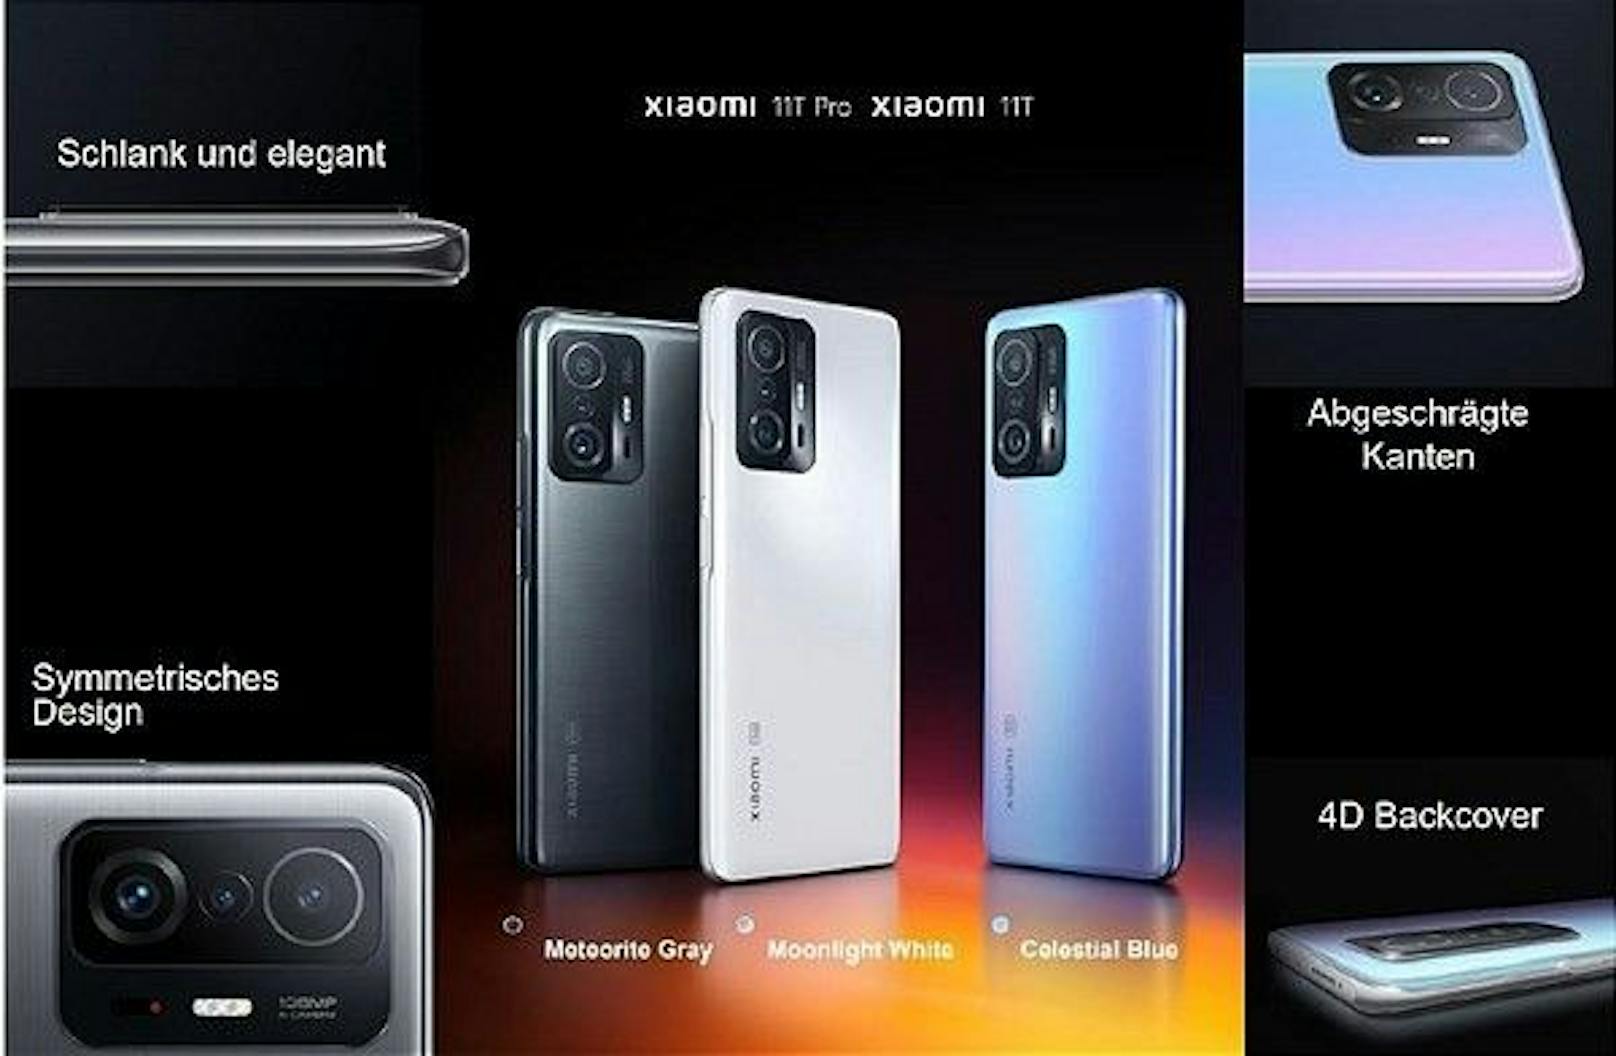 Herzstück der in Wien neu präsentierten Produkte ist die Smartphone-Serie Xiami 11T,  in der das Standard- und das Pro-Modell laut Unternehmen über "bahnbrechende Features" bei der Dreifach-Kamera verfügen soll. "